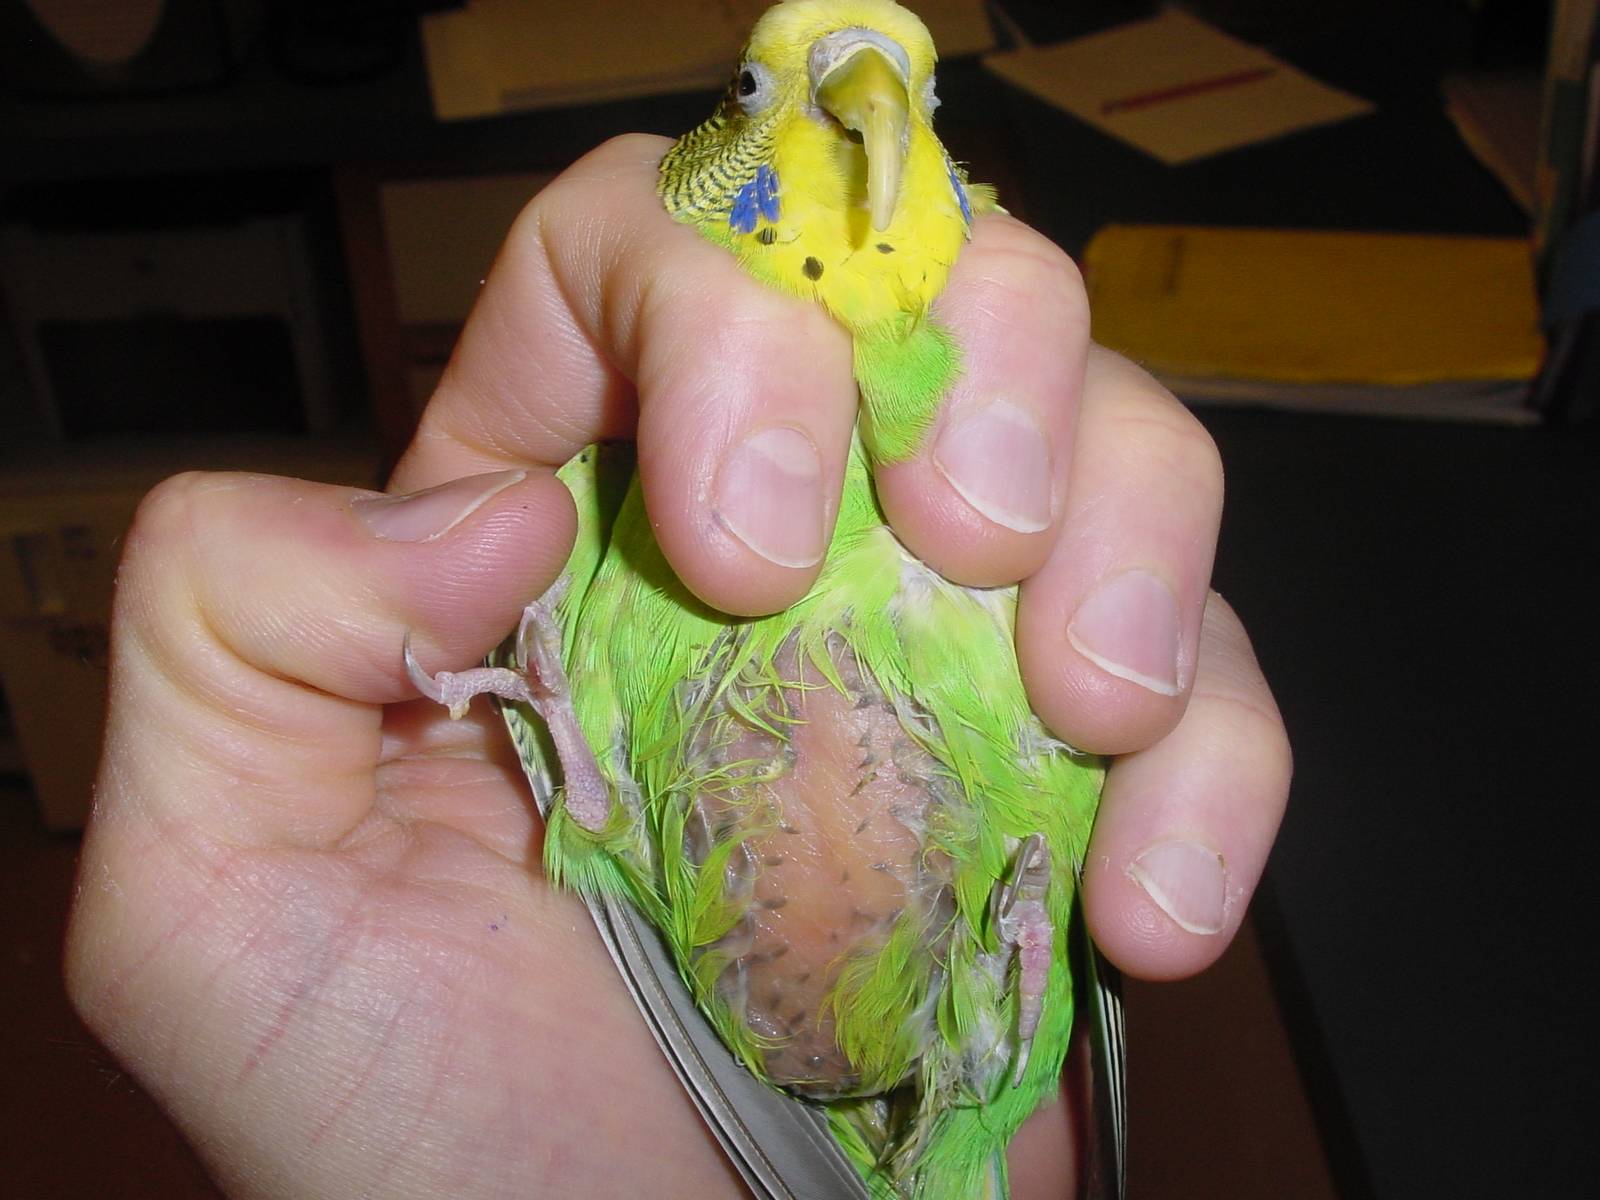 Болезни и лечение попугаев